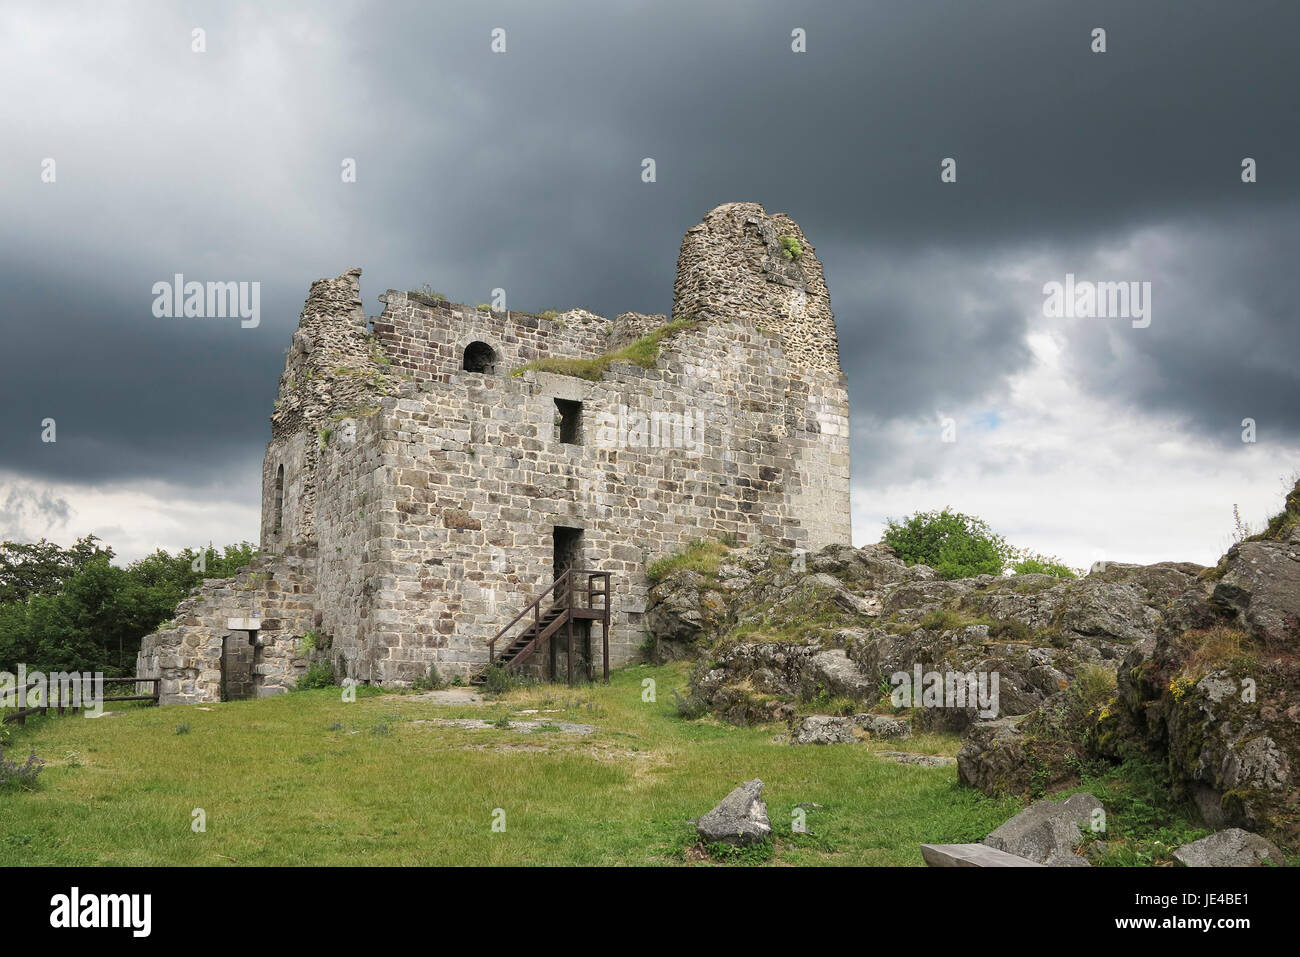 Primda Castle - die eine von den ältesten steinernen Burgen in Tschechien.  Die erste Erwähnung von Primda Burg stammt aus dem Jahre 1121.  Die Ruinen des Schlosses steht am südlichen Ende der felsigen Grat oberhalb des Dorfes Primda Tachov Region Primda. Primda gilt als die älteste erhaltene steinerne Burg in Böhmen und ist als nationales Denkmal geschützt. Die Burg wurde erhaltenen Ruinen der massive rechteckige romanische Wohnturm, Bruchstein erbaut. Auch gibt es Überreste von einem zylindrischen Turm aus dem späten 15. Jahrhundert.  Primda, Tschechische Republik. Stockfoto